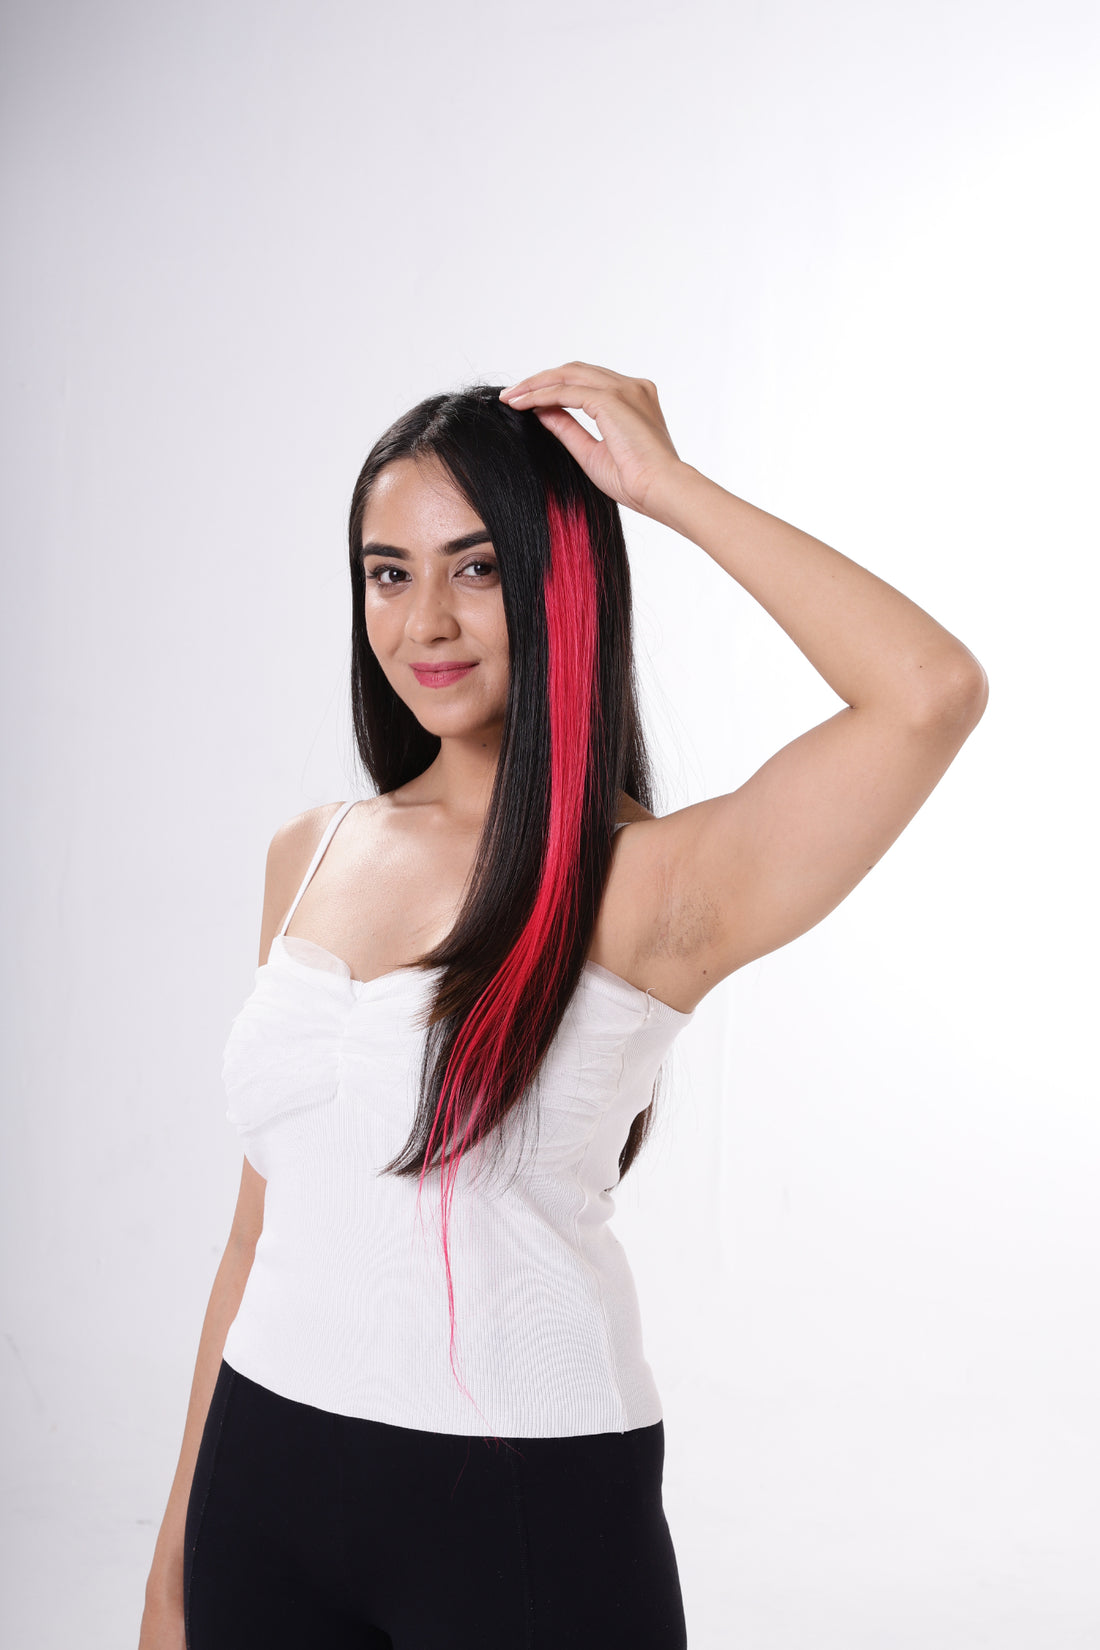 Fushia Fusion Hair Streaks | 100% Human Hair Extensions